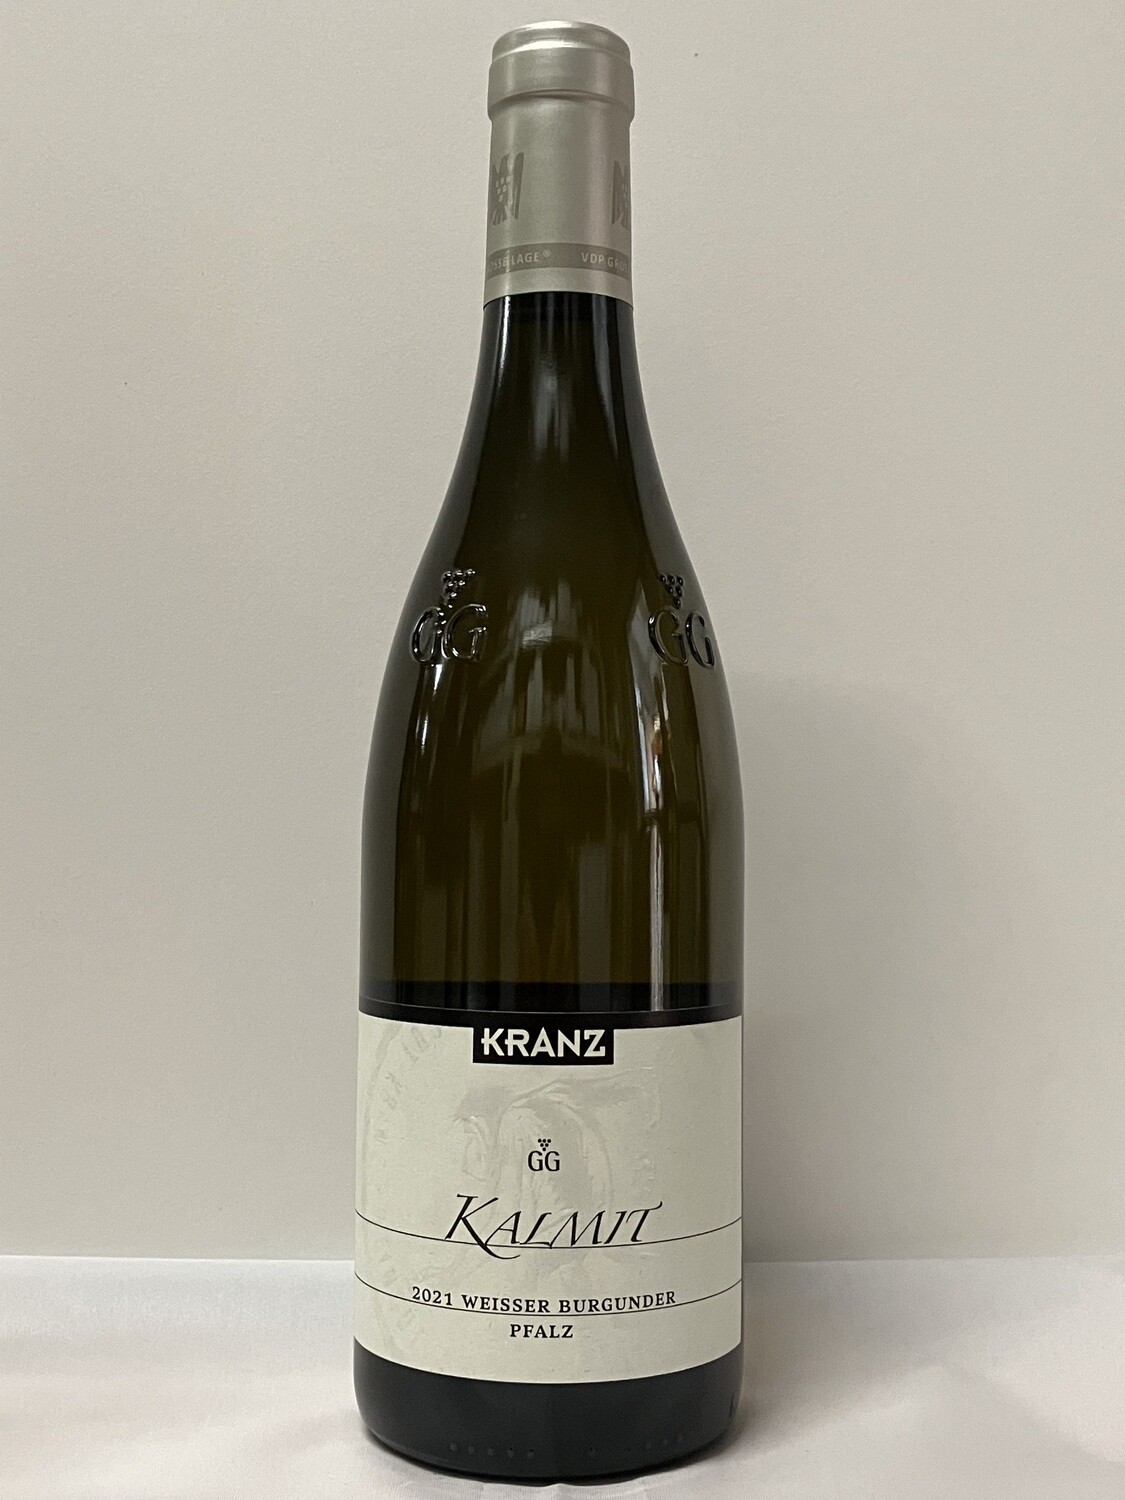 Pinot blanc VDP.Grosses Gewächs 2021 droog Kalmit Kranz (Pfalz)